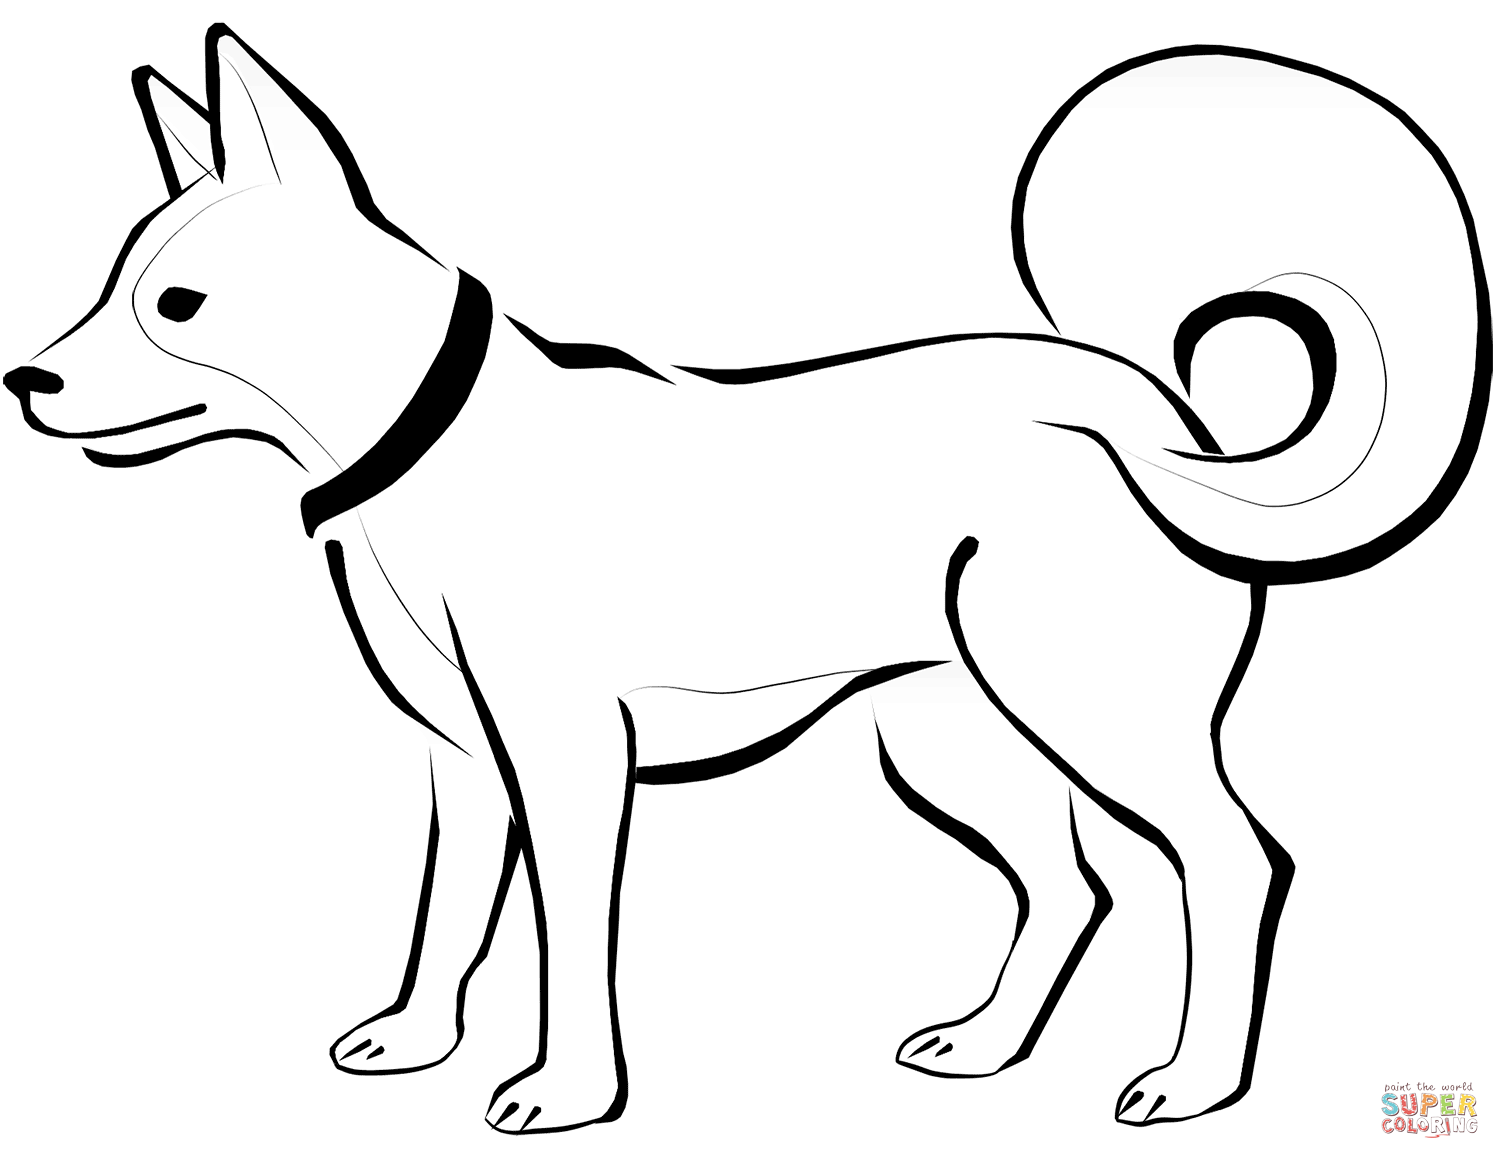 Dibujo de perro esquimal para colorear dibujos para colorear imprimir gratis